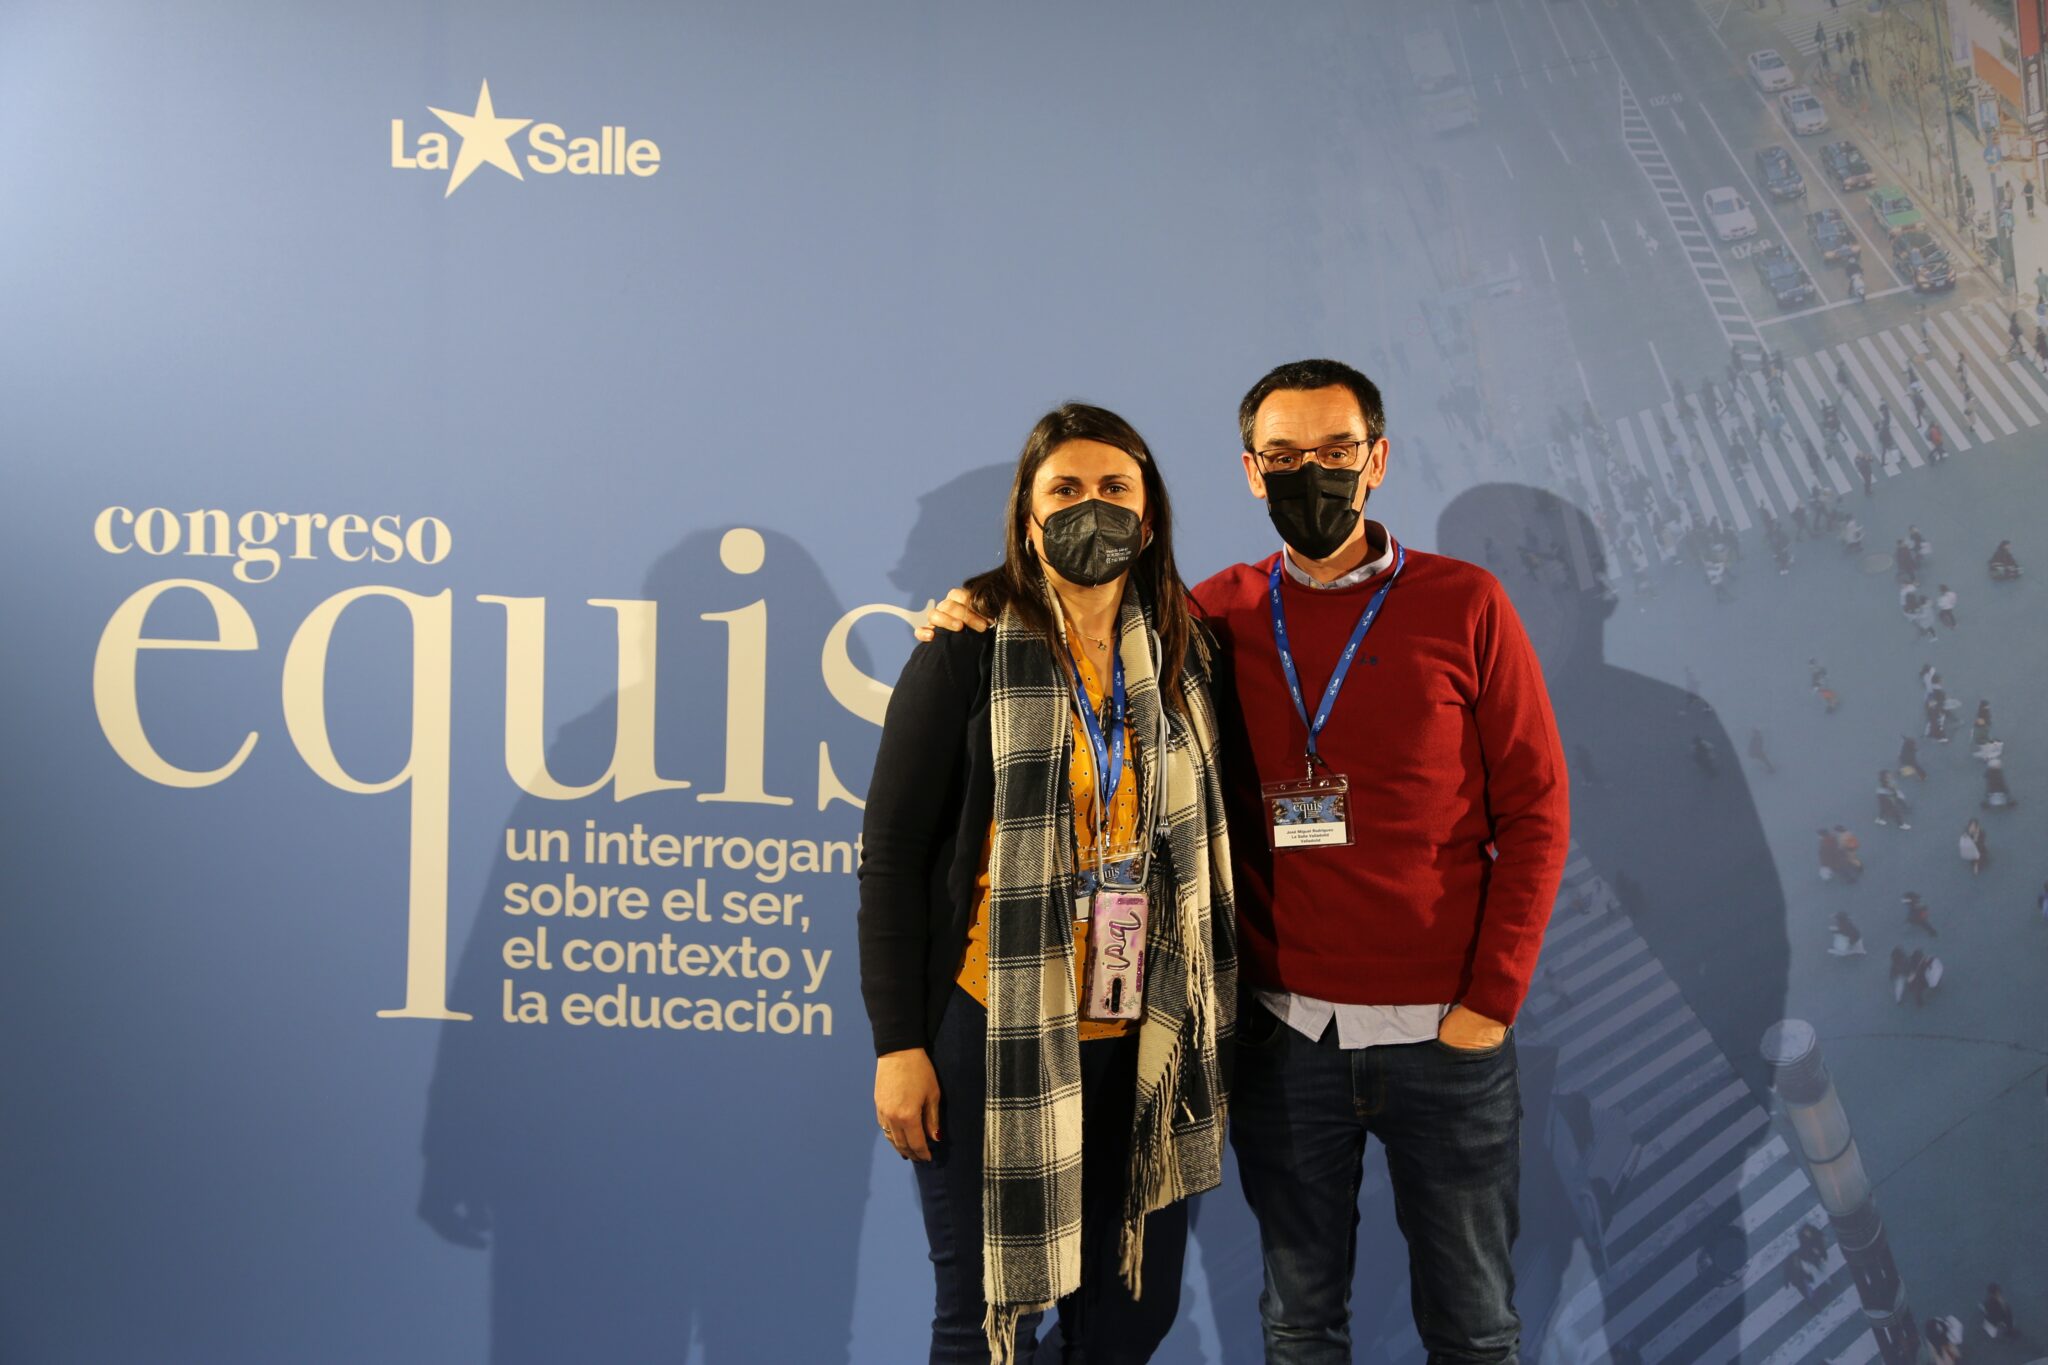 Congreso Equis, La Salle presenta en sociedad su Nuevo Contexto de Aprendizaje